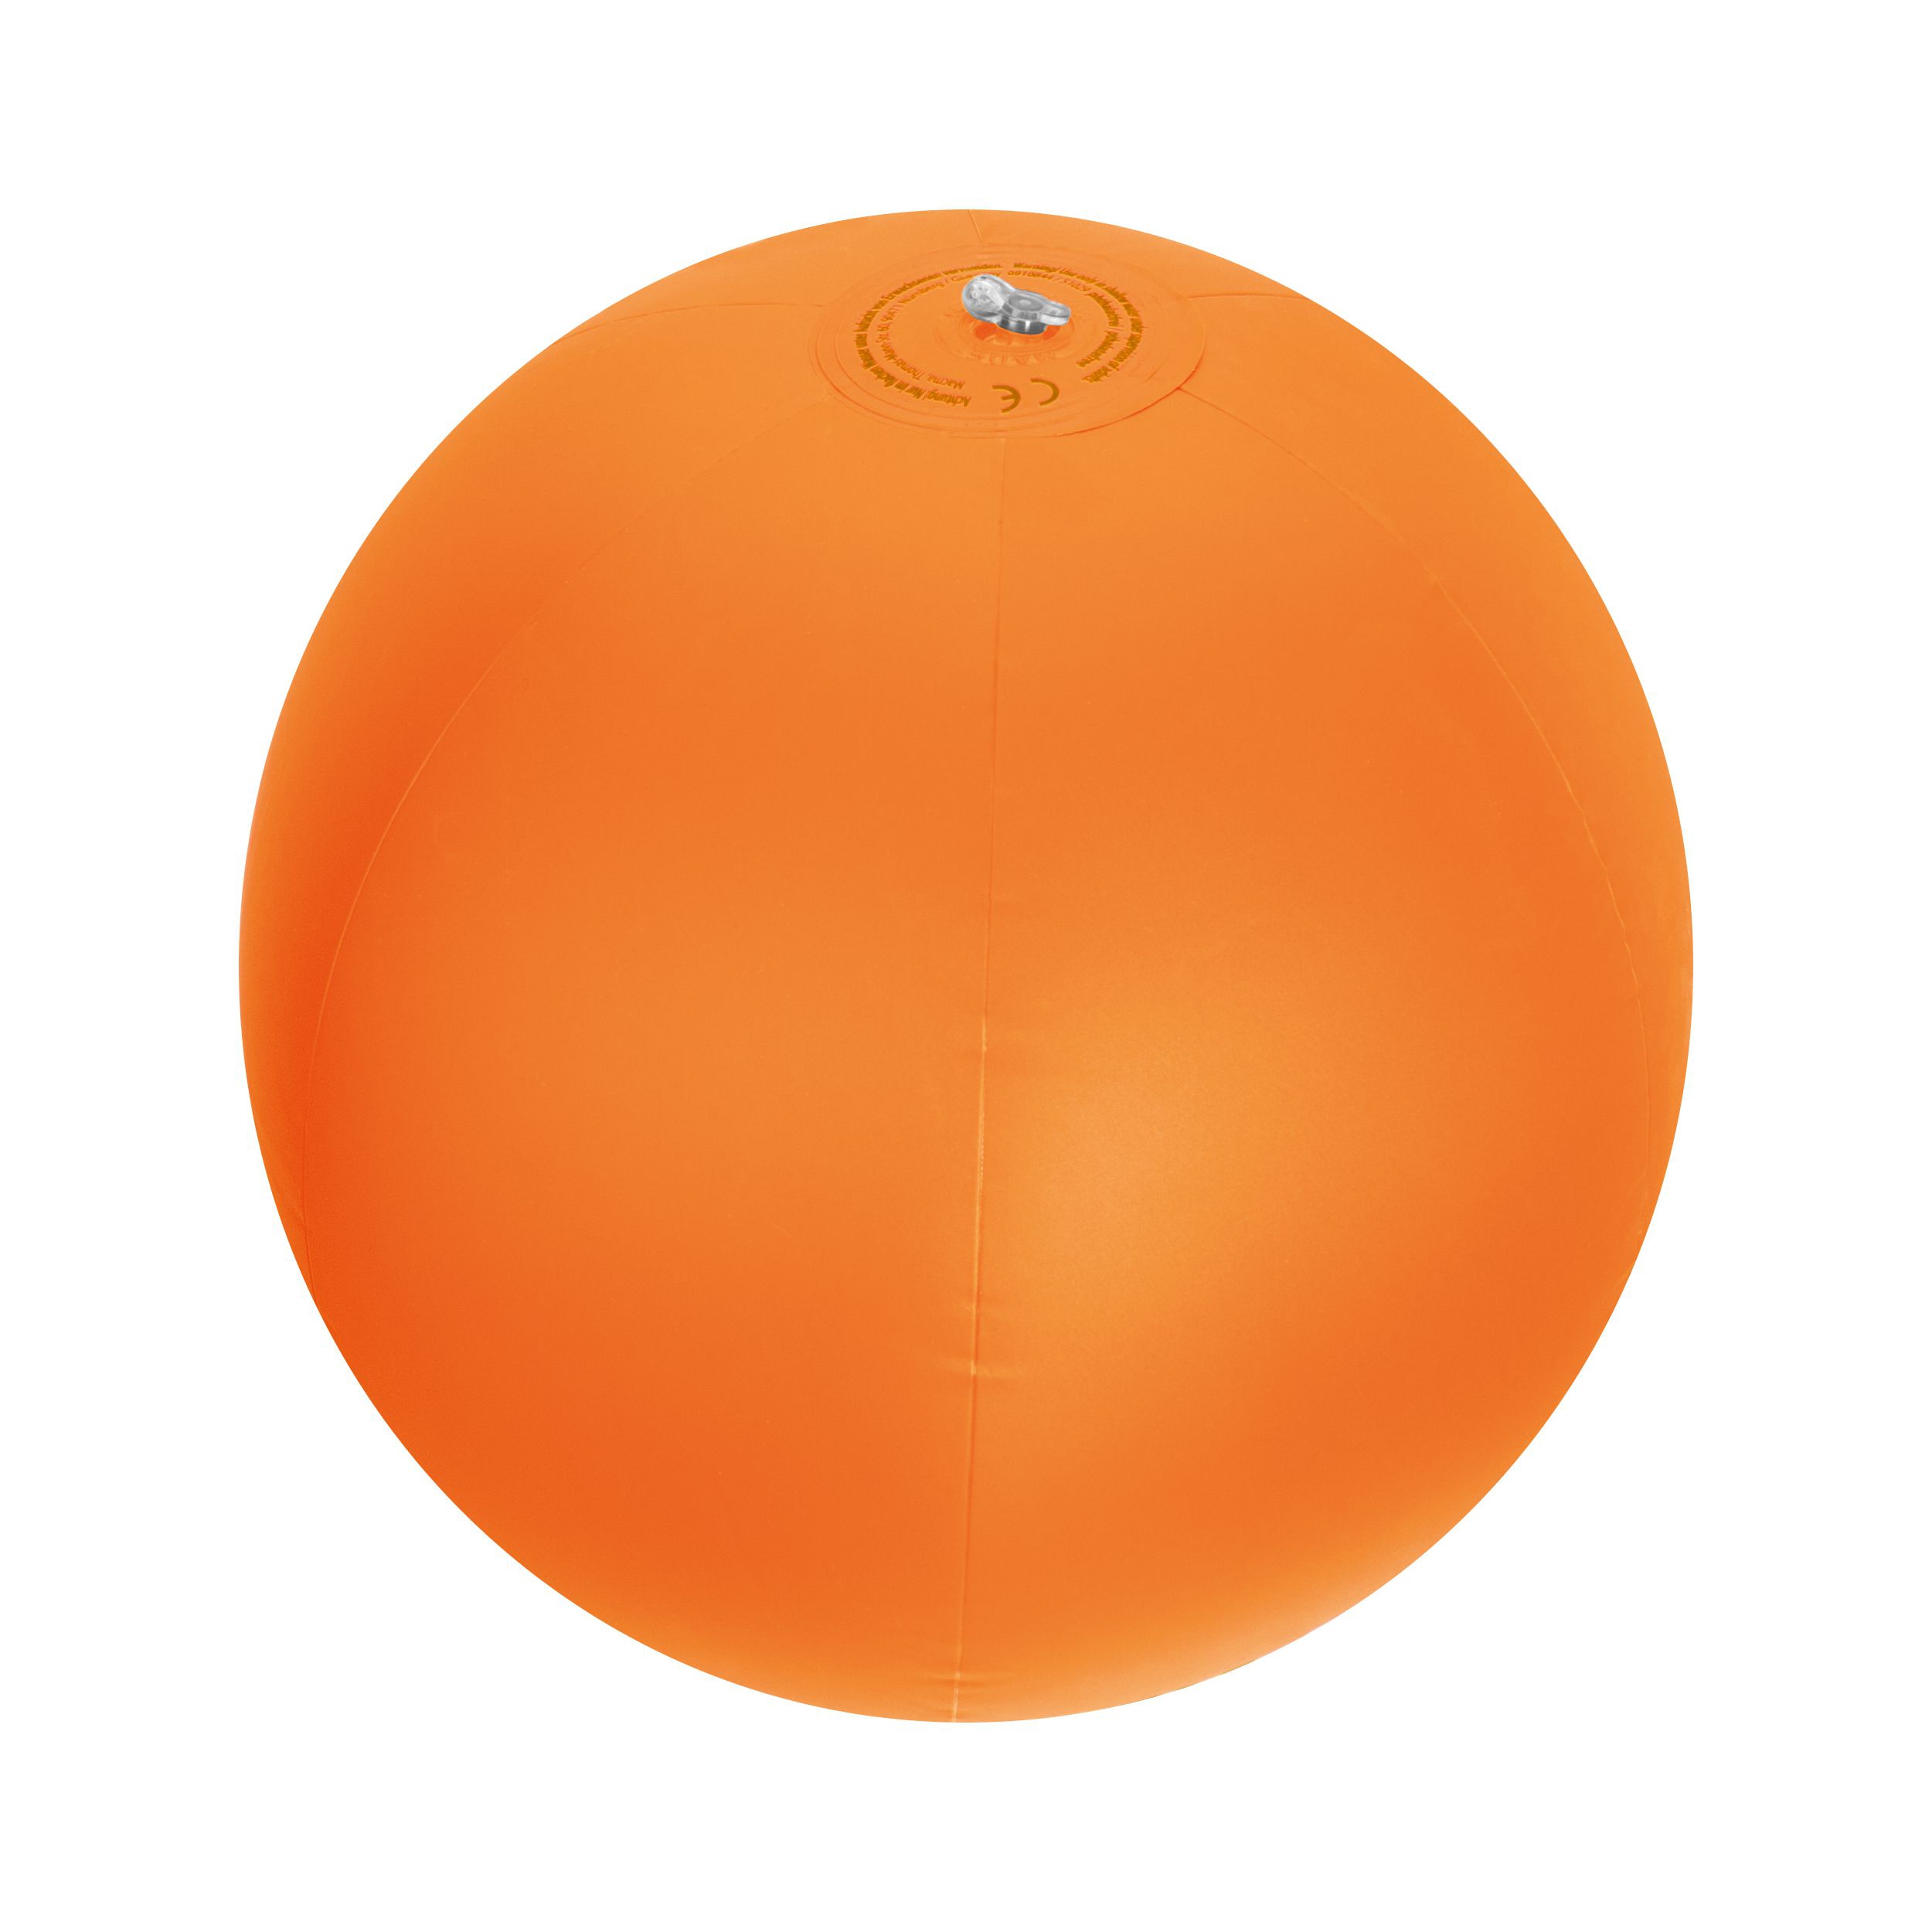 Strandball aus PVC mit einer Segmentlänge von 40 cm, orange